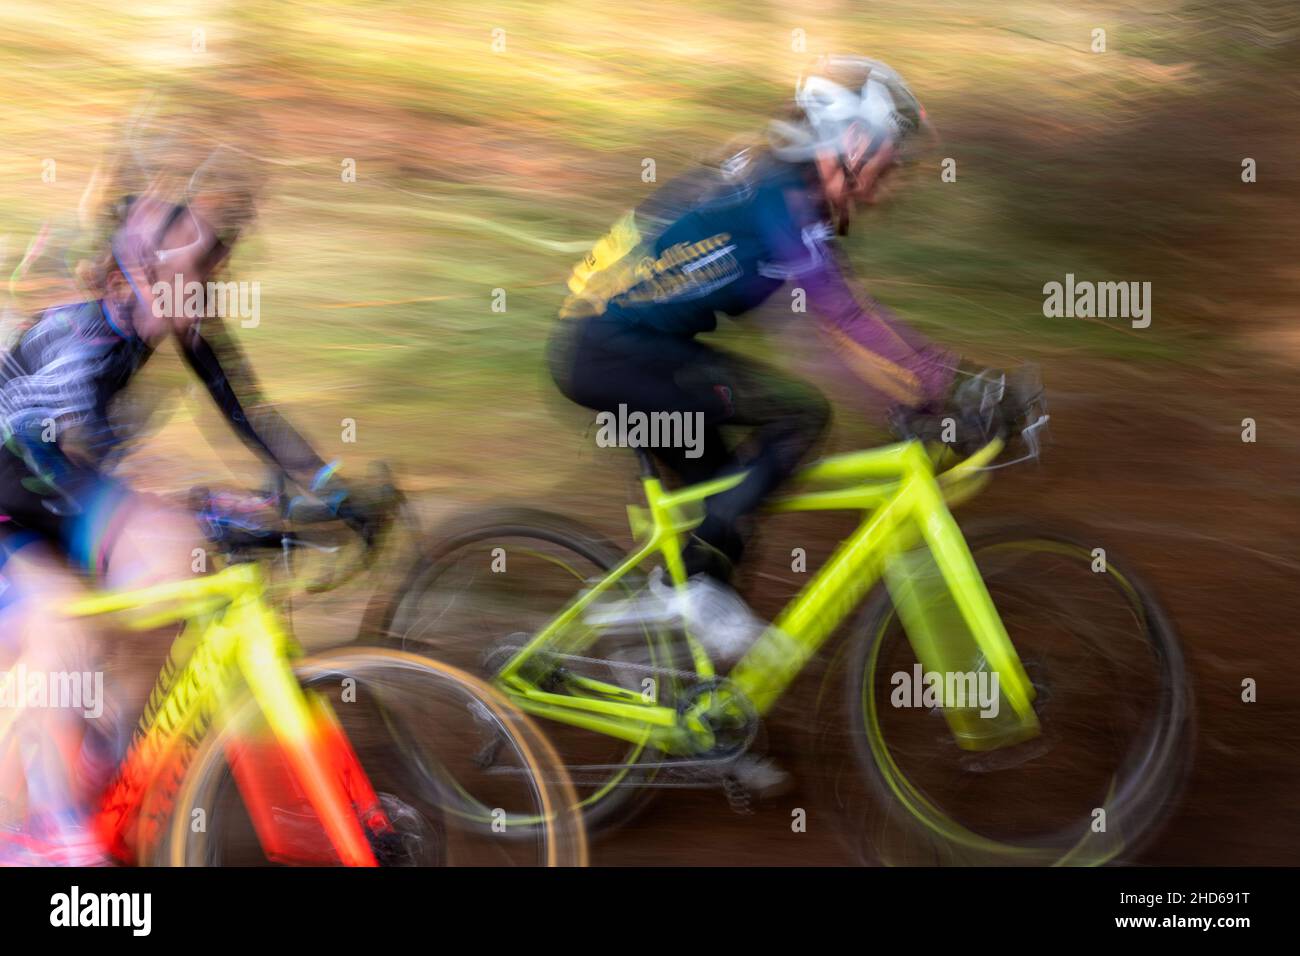 WA20621-00....WASHINGTON - Pan Action eines Radsportfahrers auf dem eingleisigen Abschnitt eines Frauencross-Rennens. Stockfoto